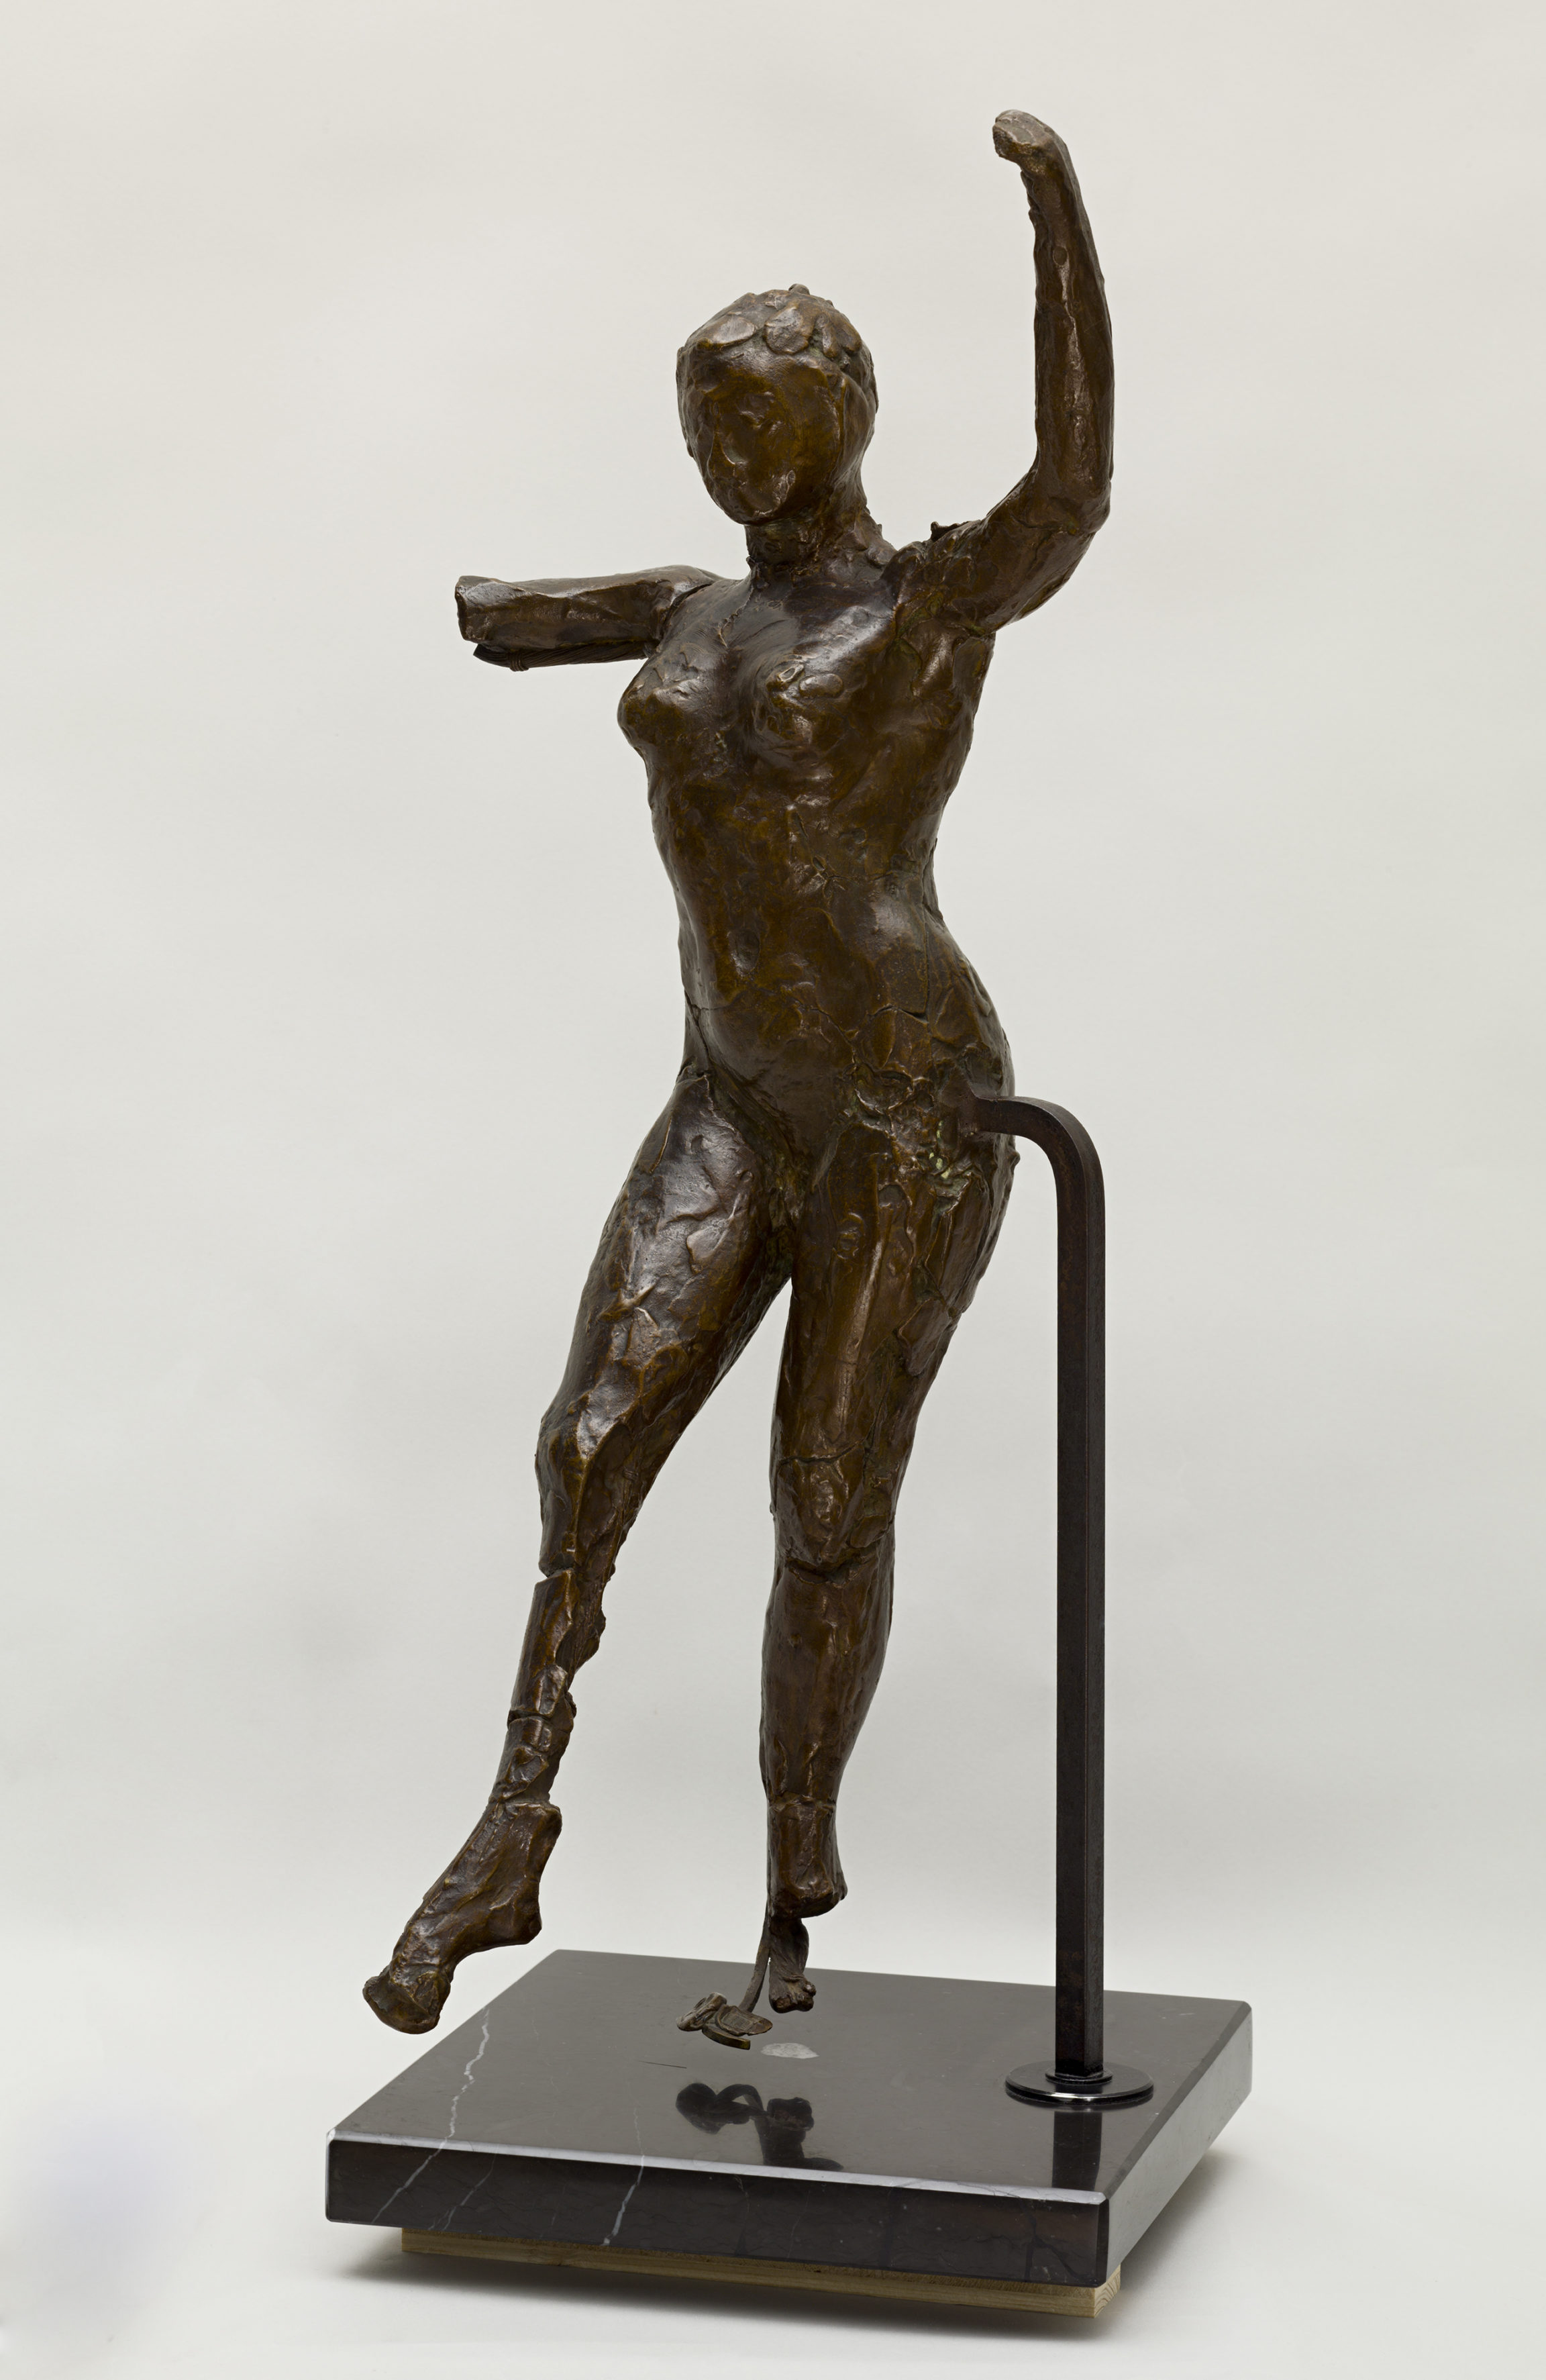 Edgar Degas, Danseuse s’avançant, les bras levés, jambe droite en avant (deuxième étude) (Dancer Stepping Forward, her Arms Raised, Right Leg Forward [second study]), c. 1885–90